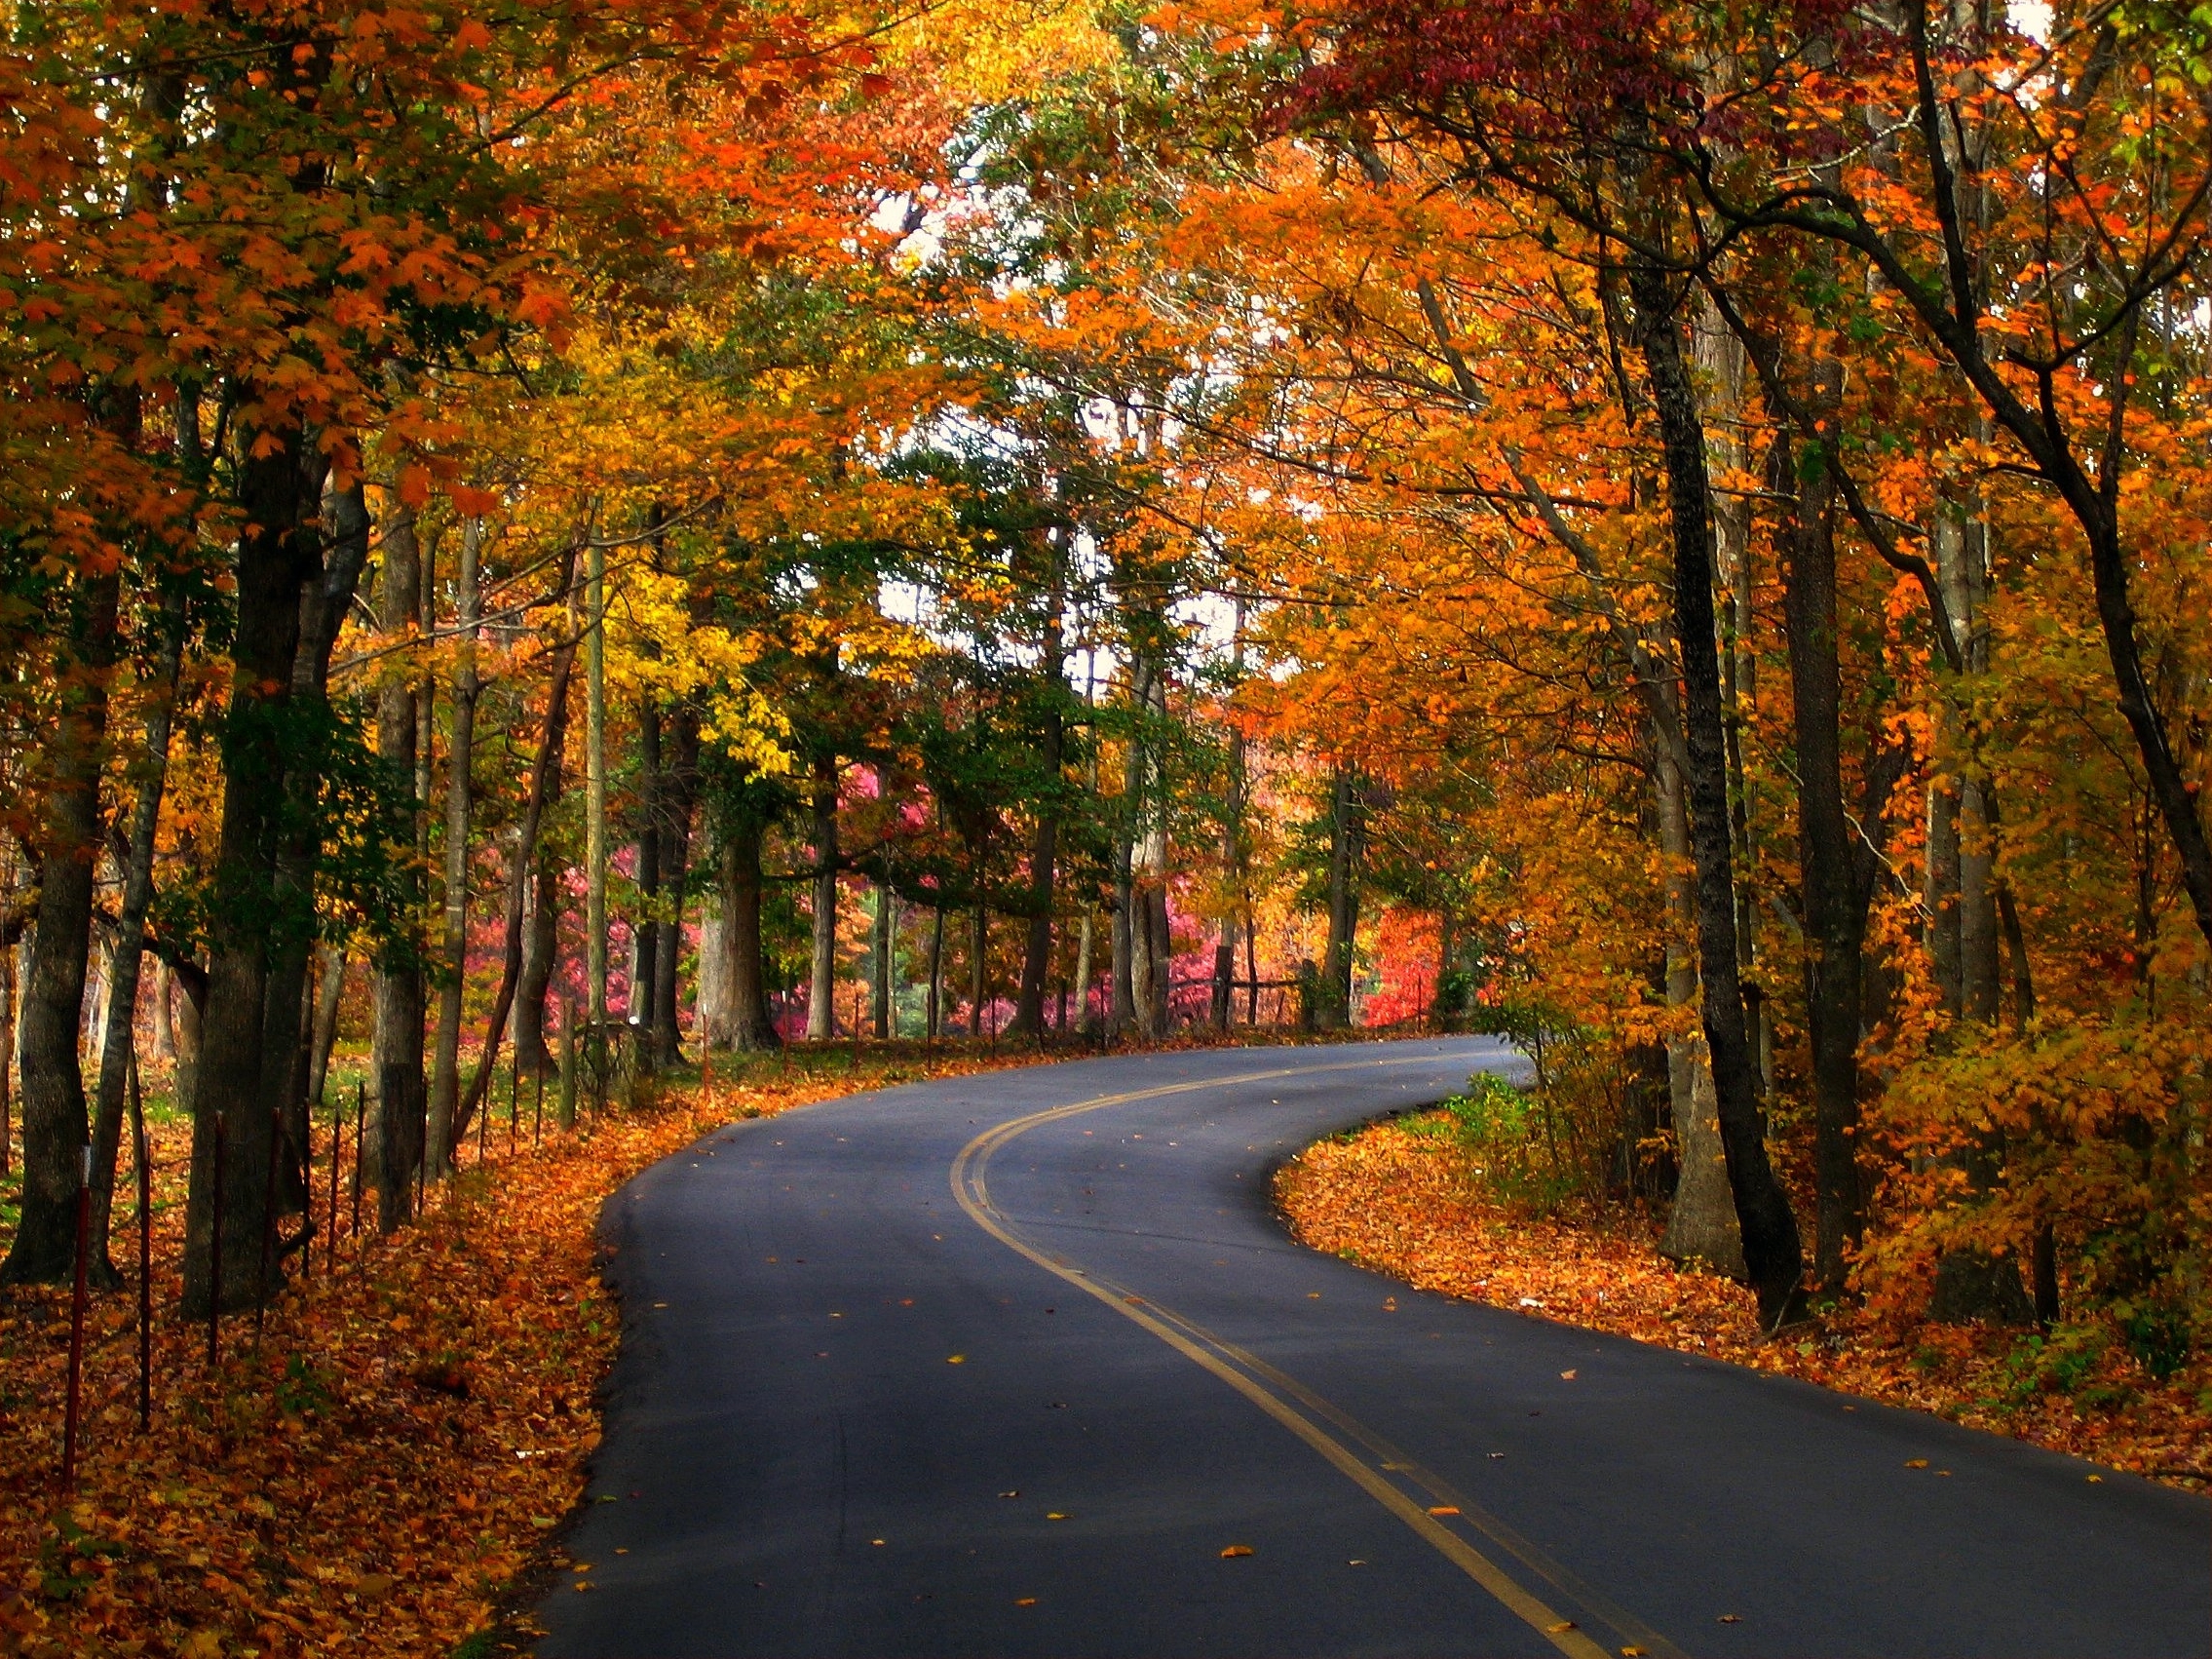 Fall scenes. Осенняя дорога. Осень дорога листва. Листопад на дороге. Осенняя дорога в лесу.